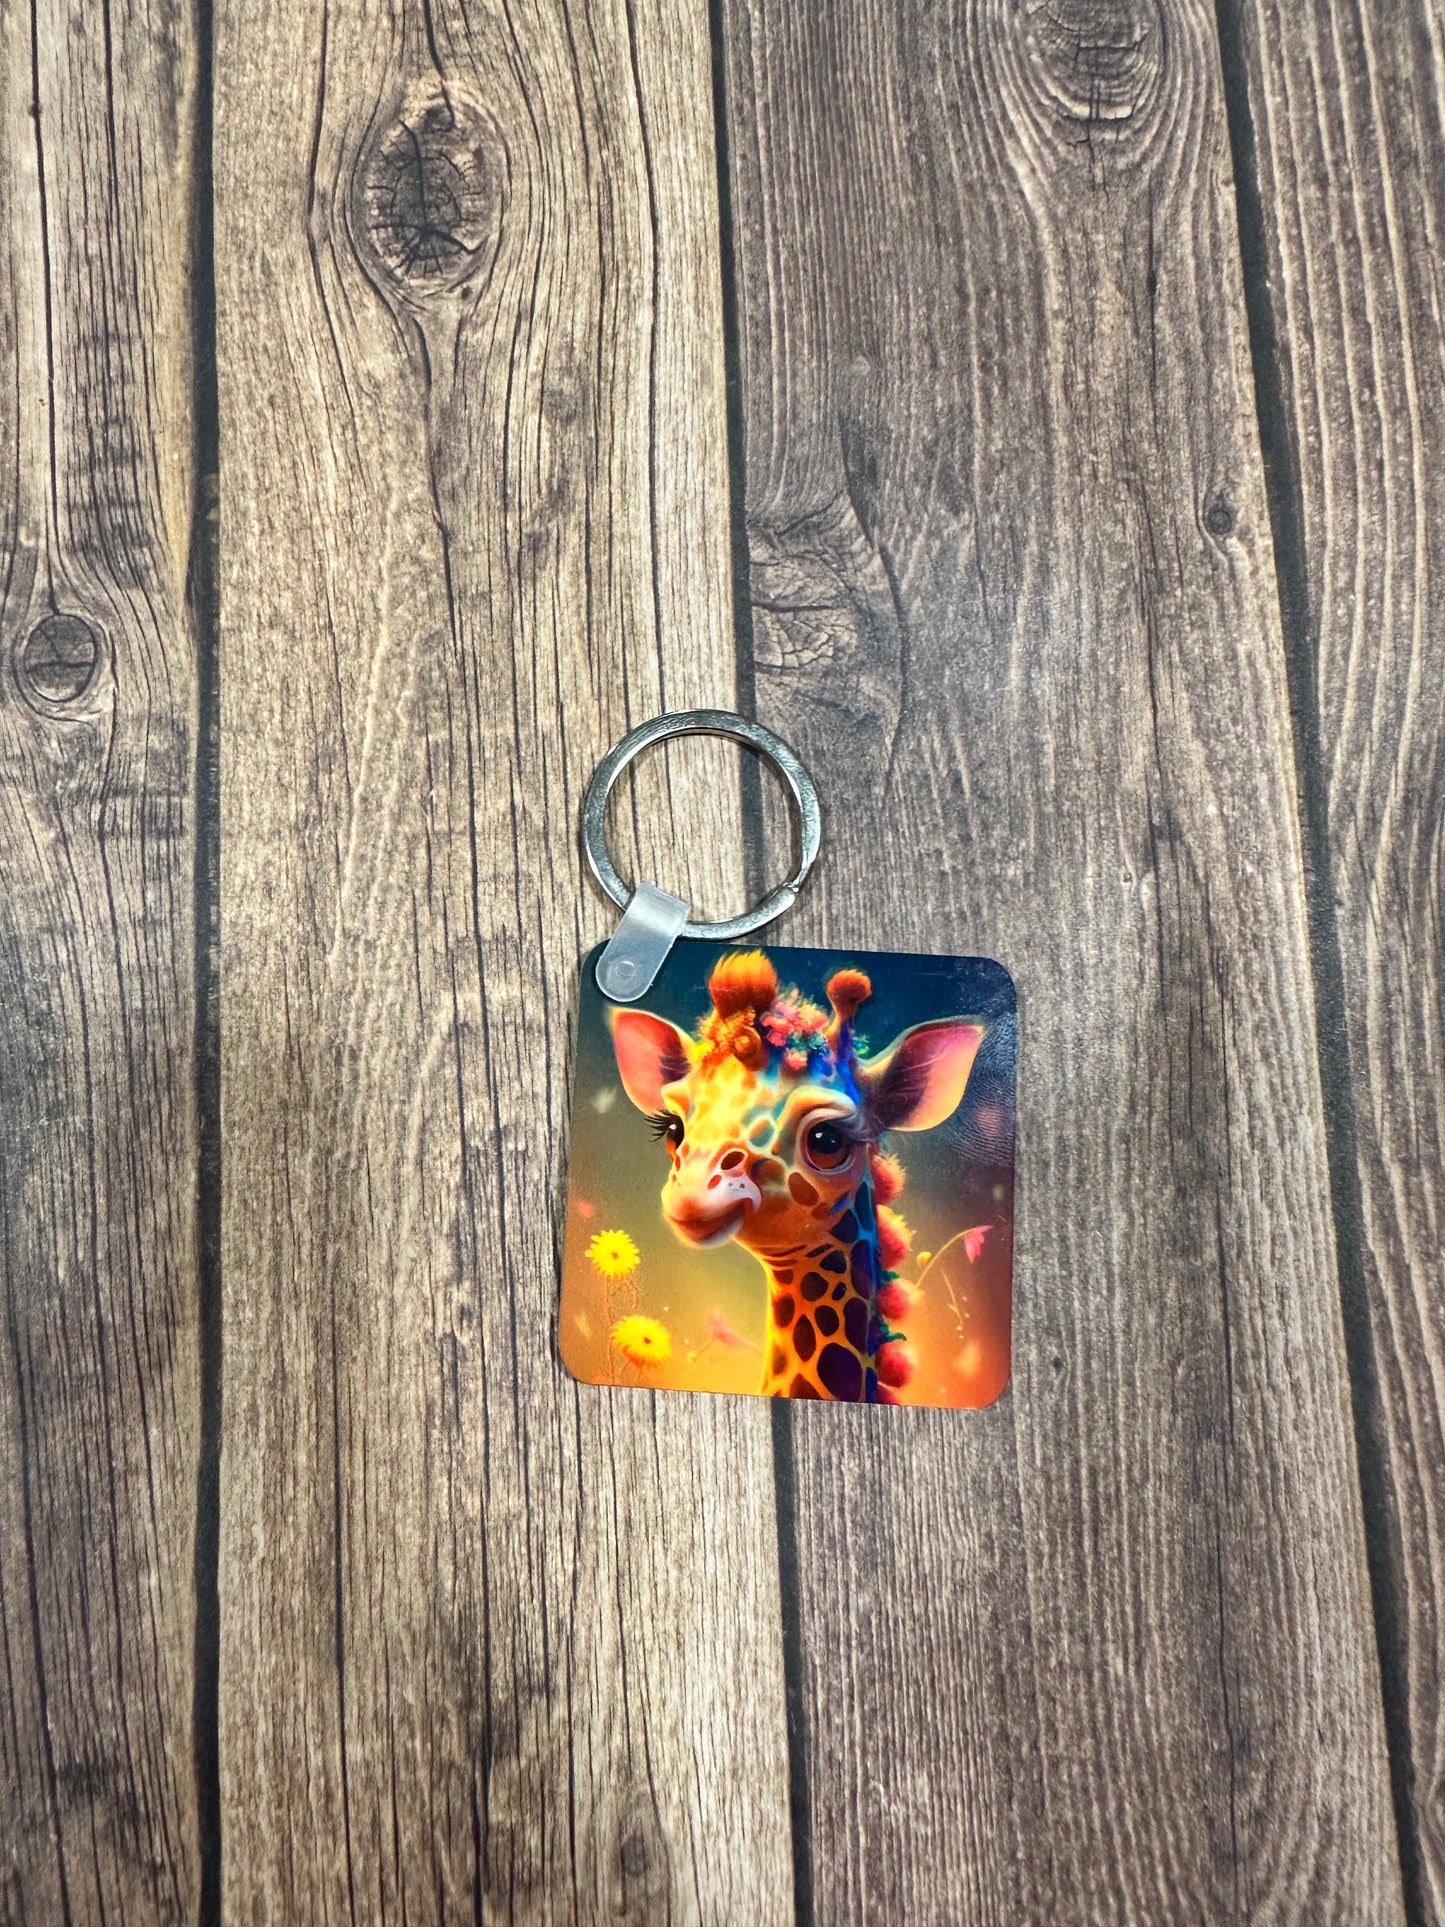 Giraffe keychain